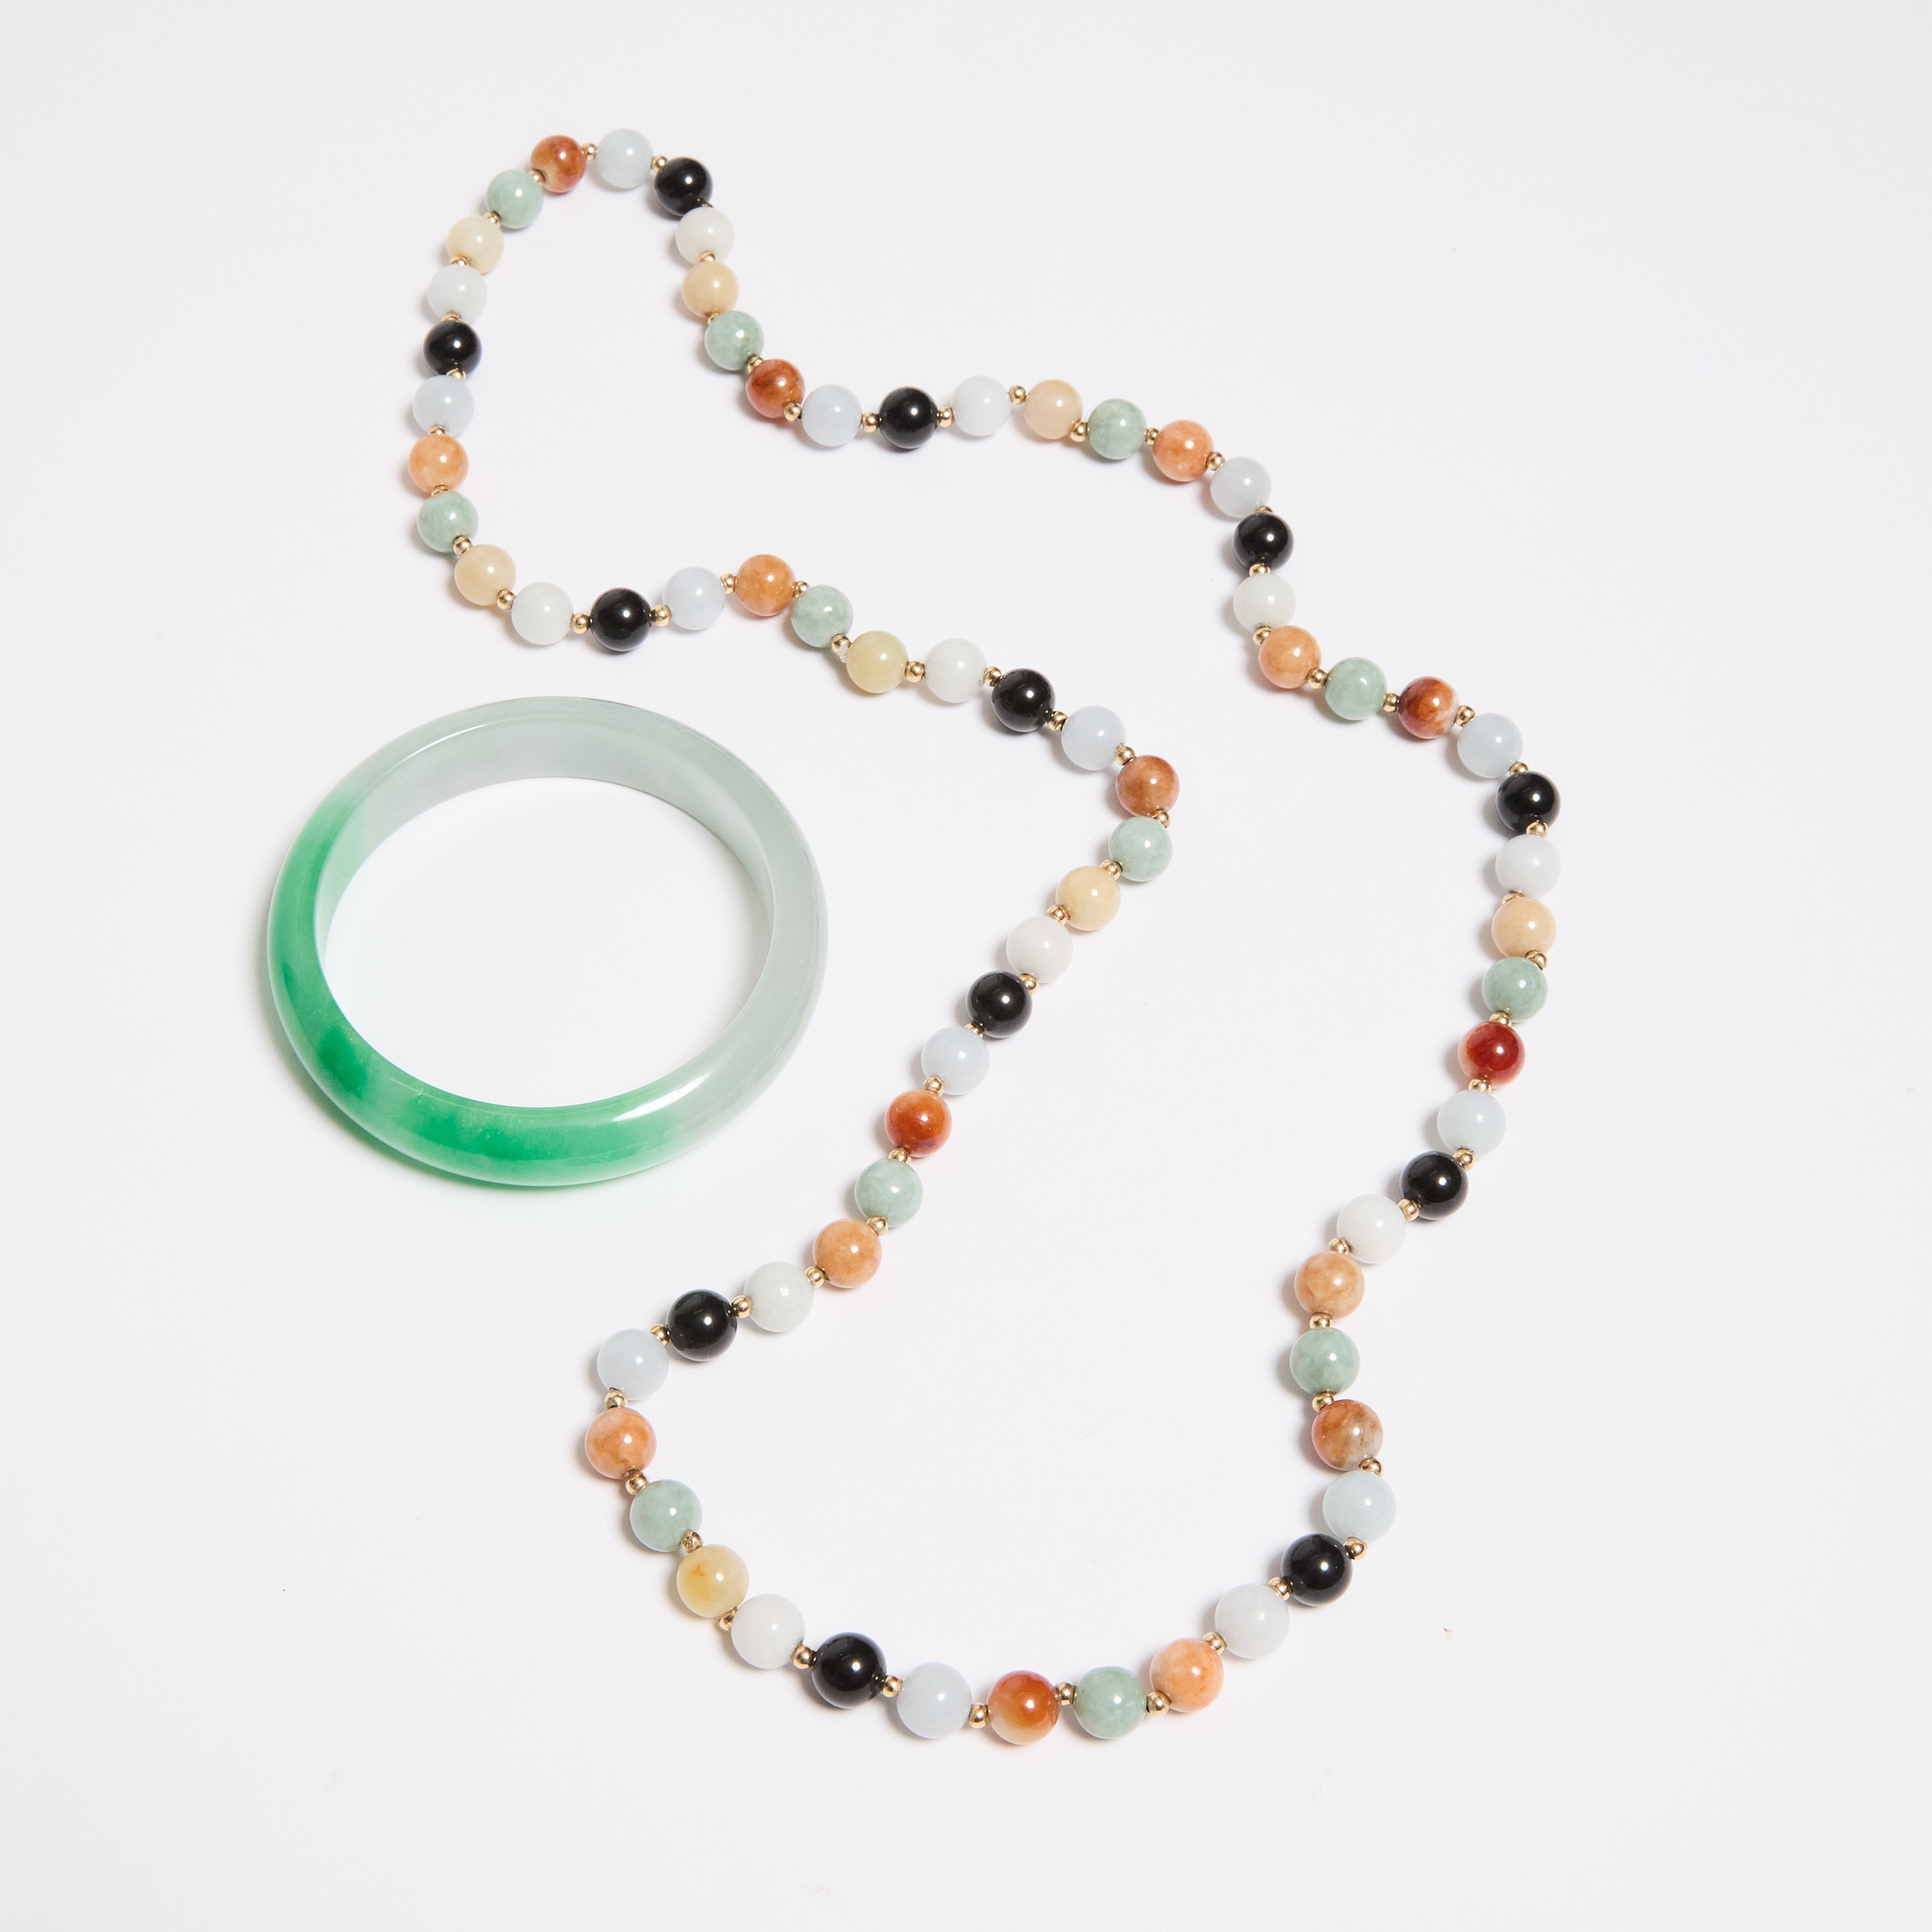 A Multicoloured Jadeite Bead Necklace